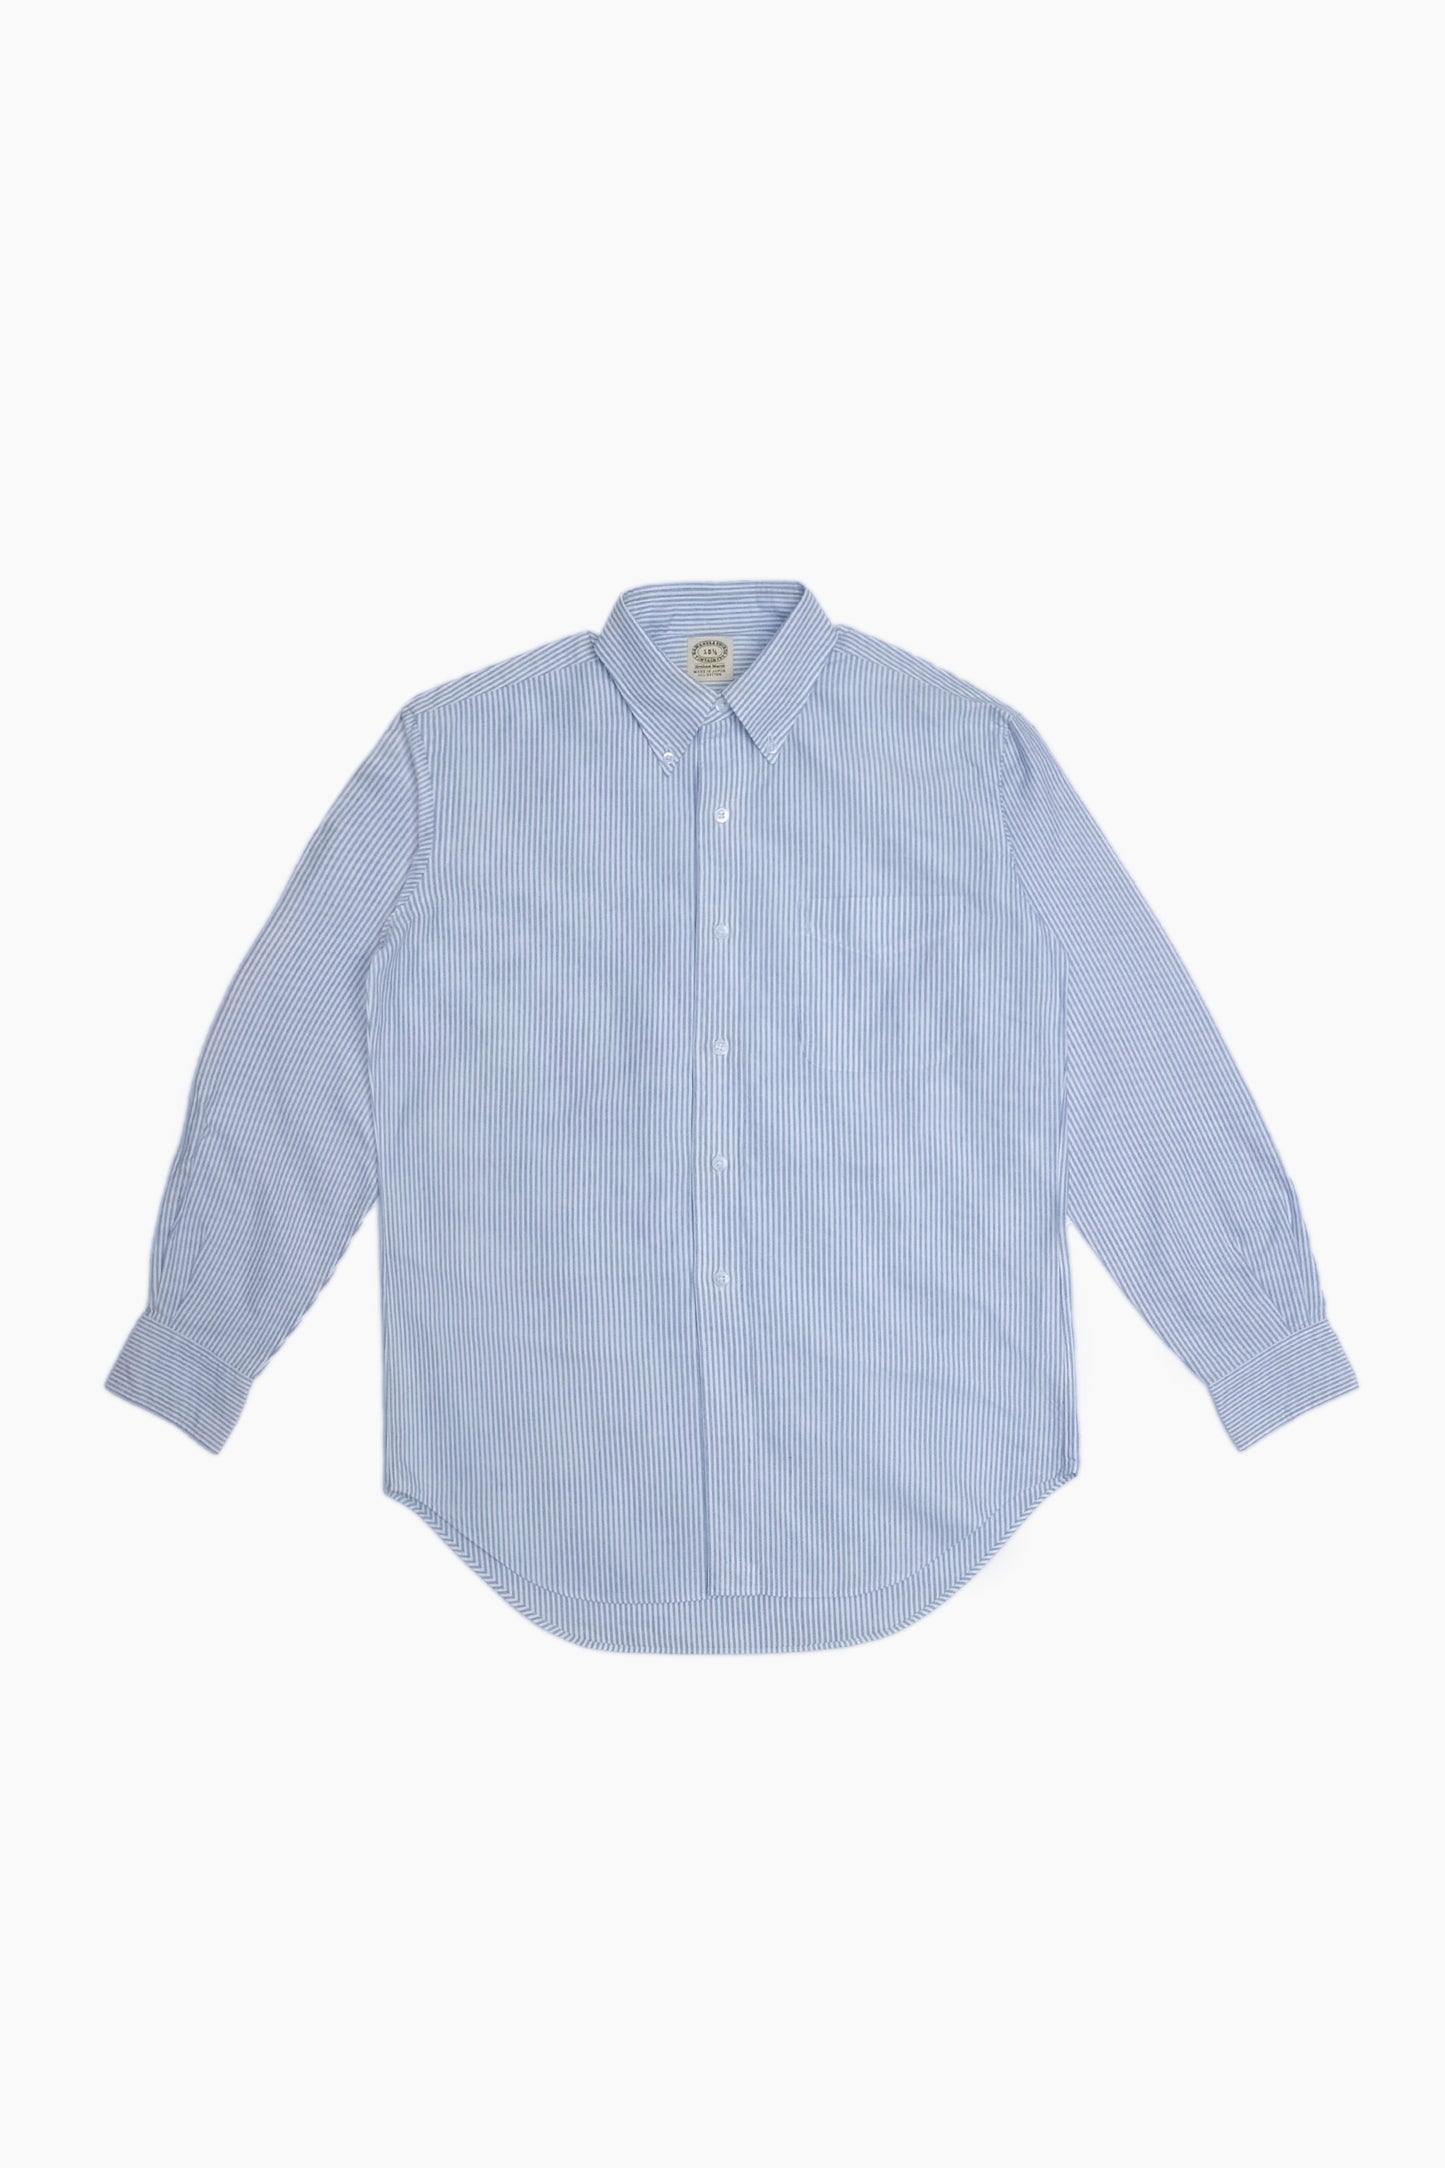 Vintage Ivy' Oxford Shirt - Blue Stripes